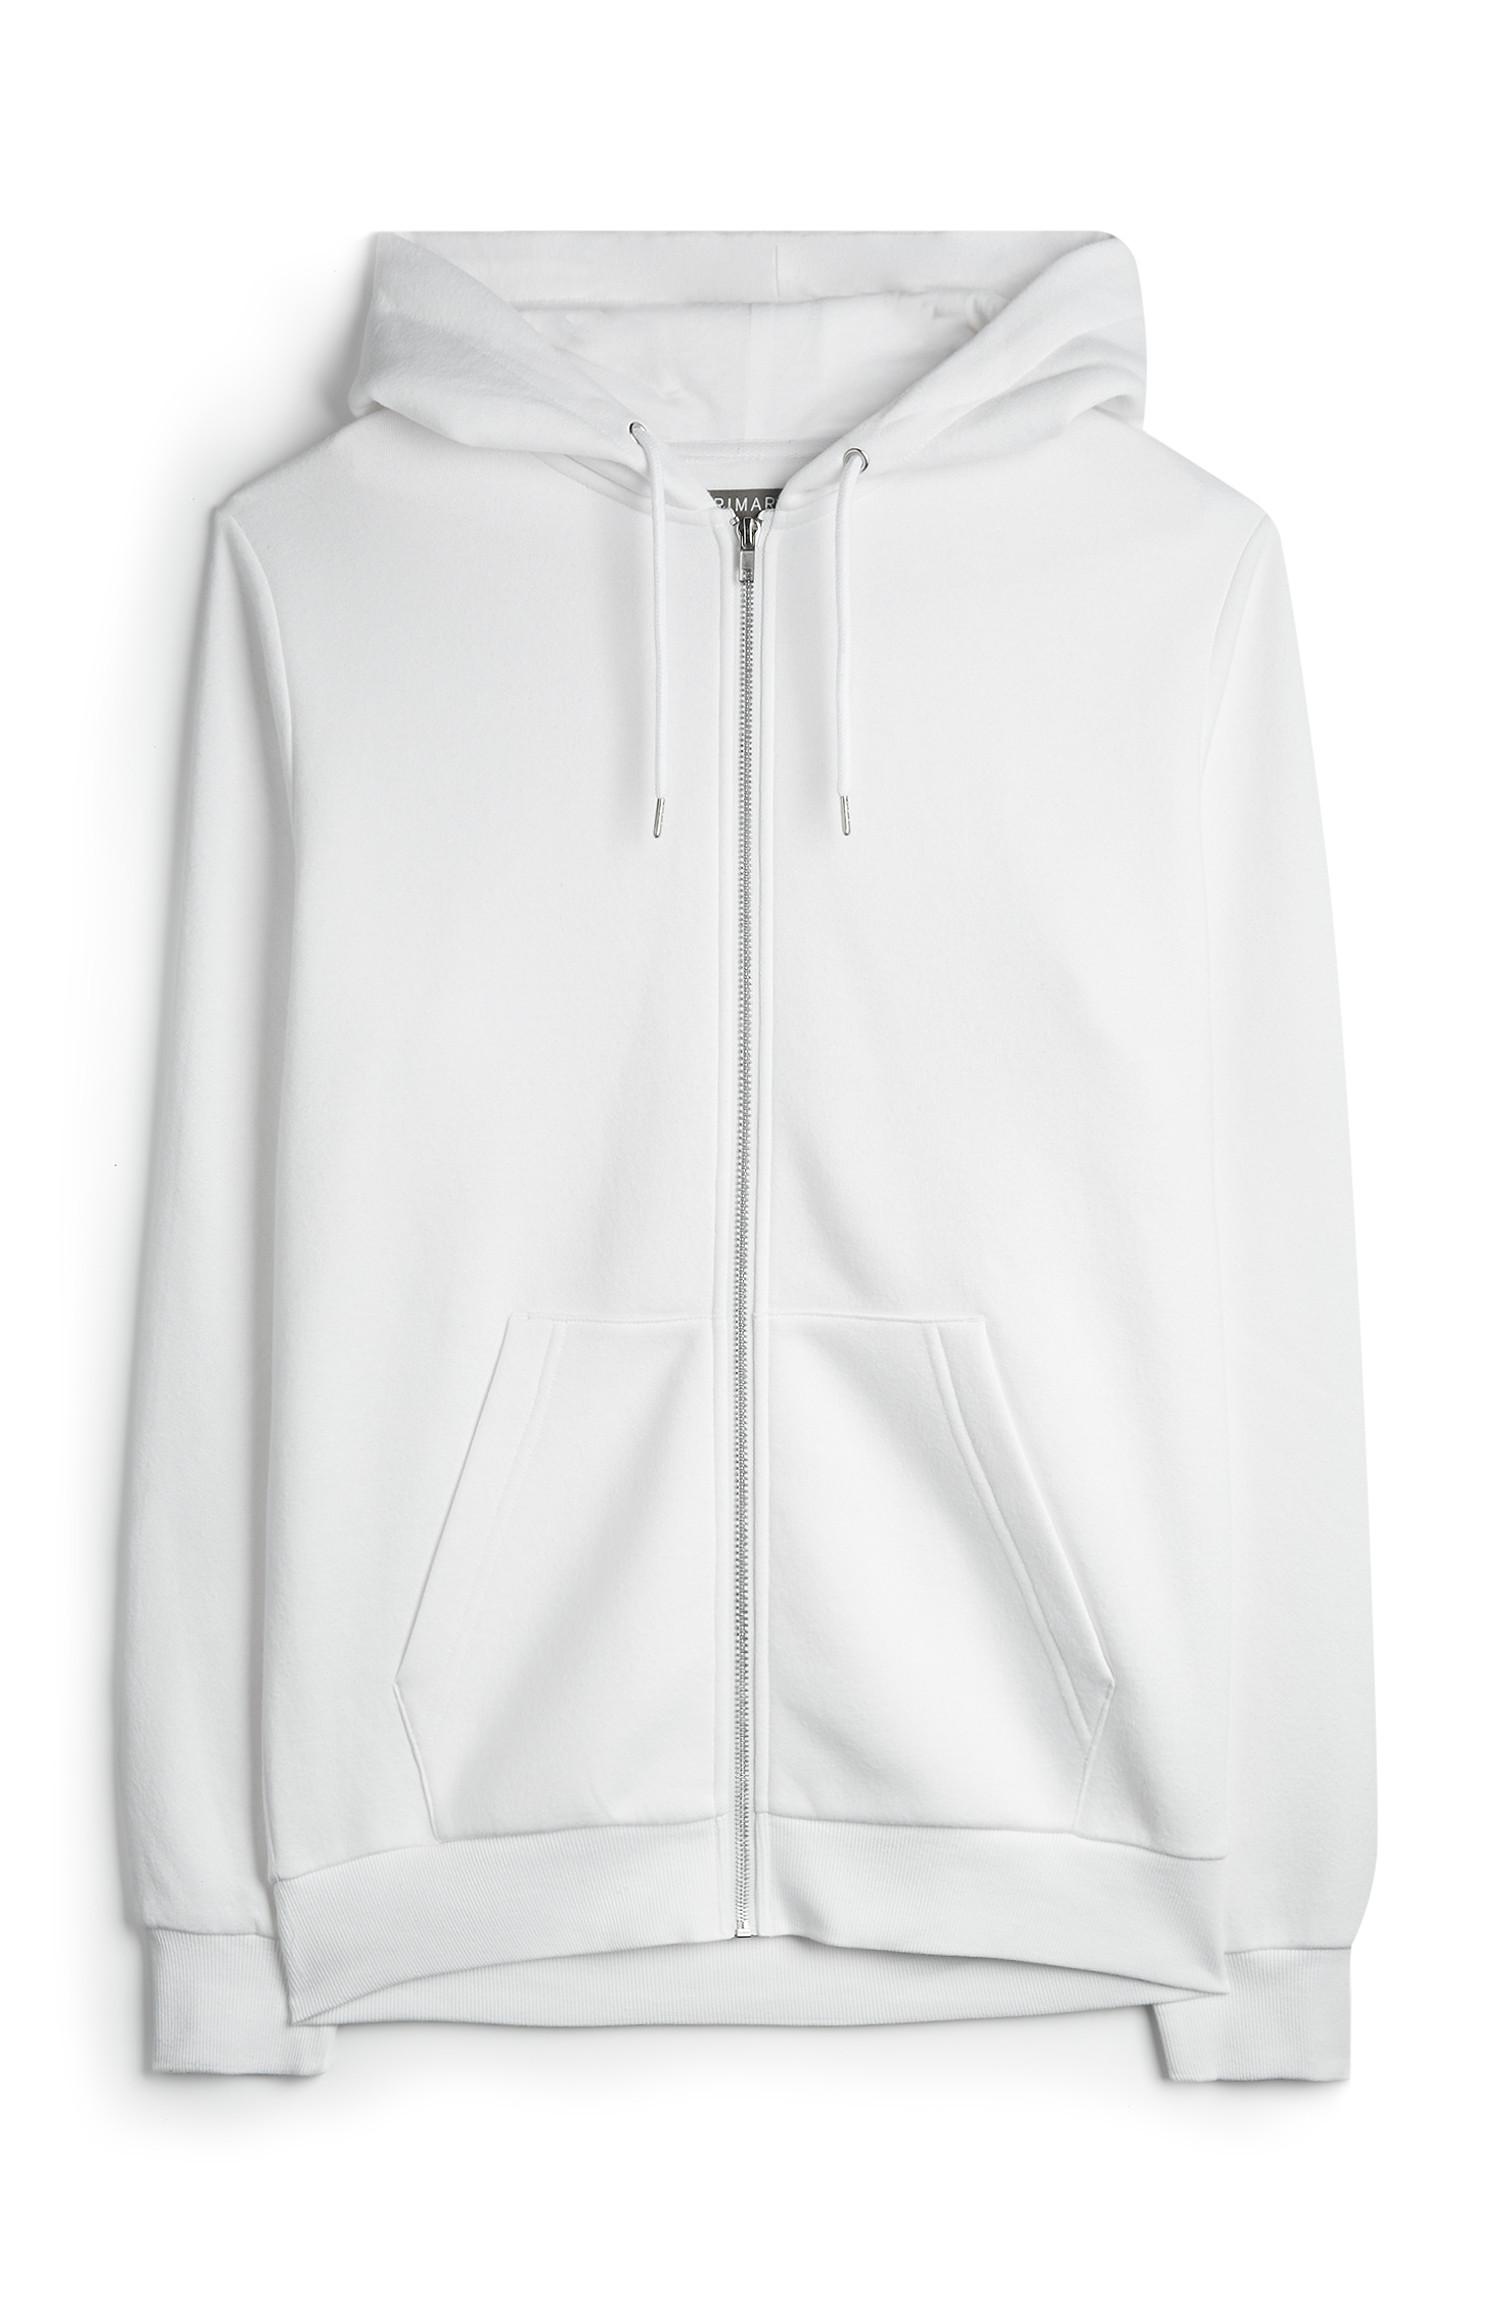 white zip up hoodie mens